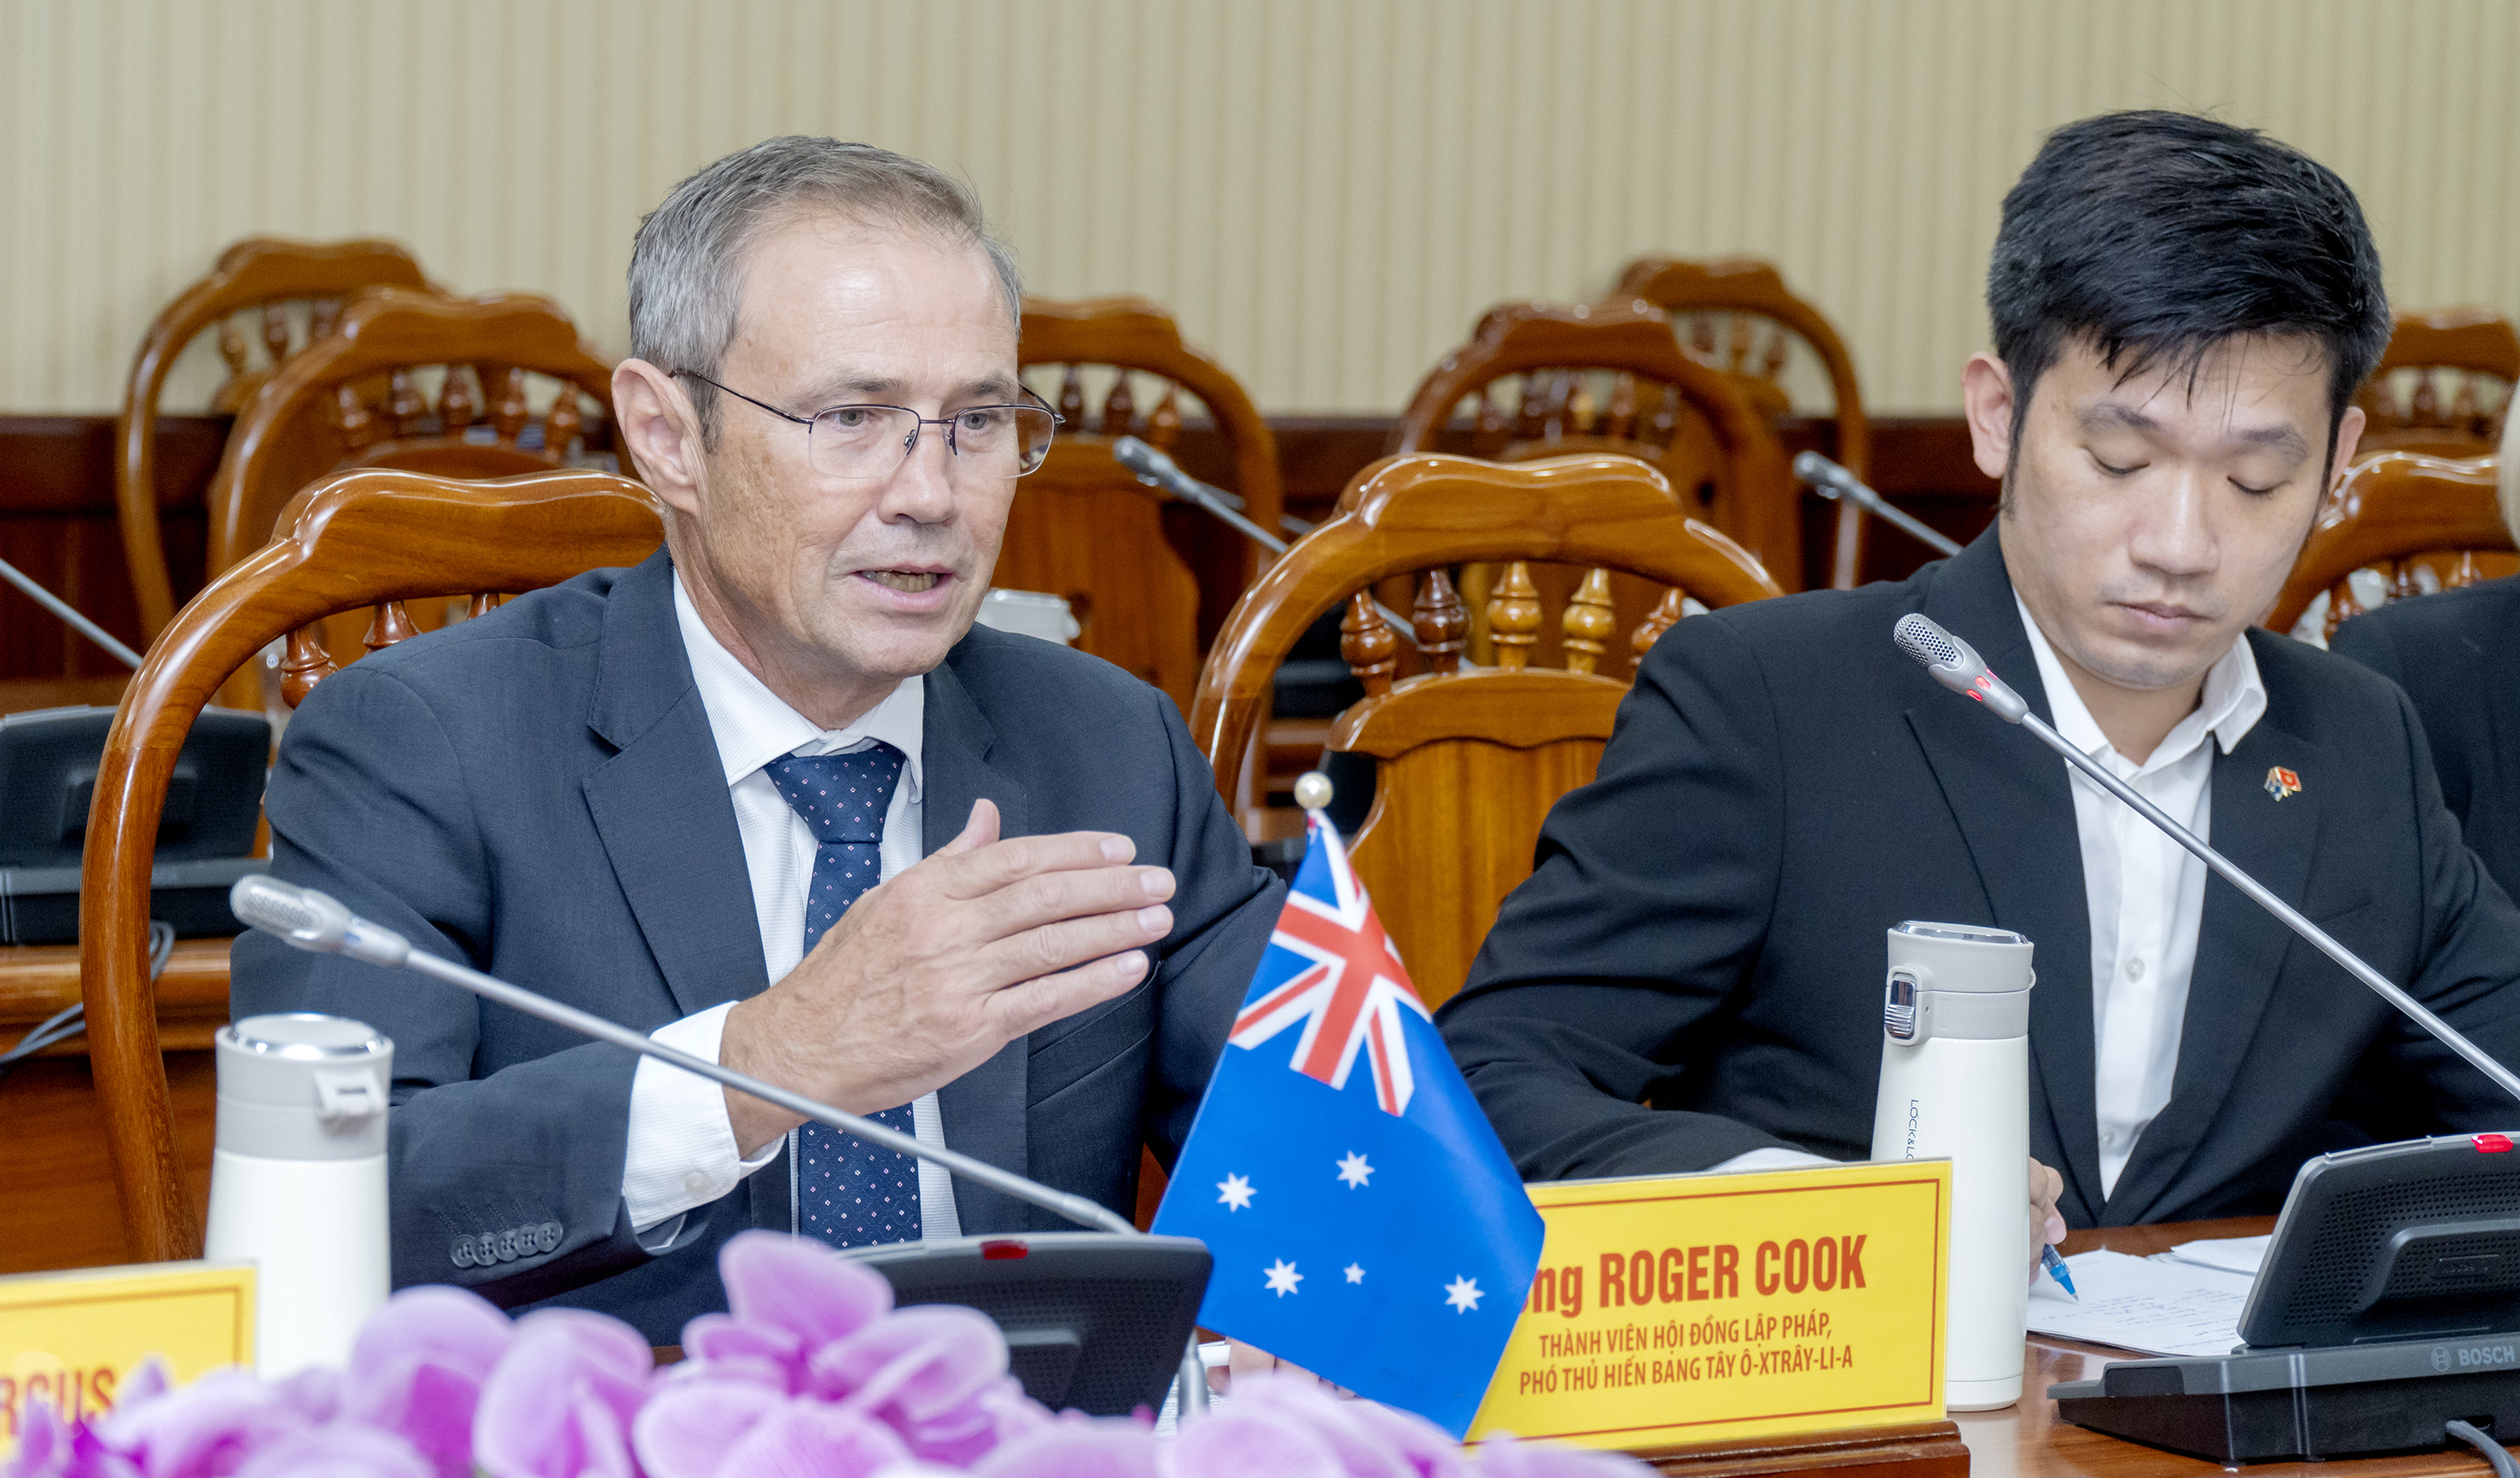 Ông Roger Cook, thành viên Hội đồng Lập pháp, Phó Thủ hiến Bang Tây Australia phát biểu tại buổi làm việc.